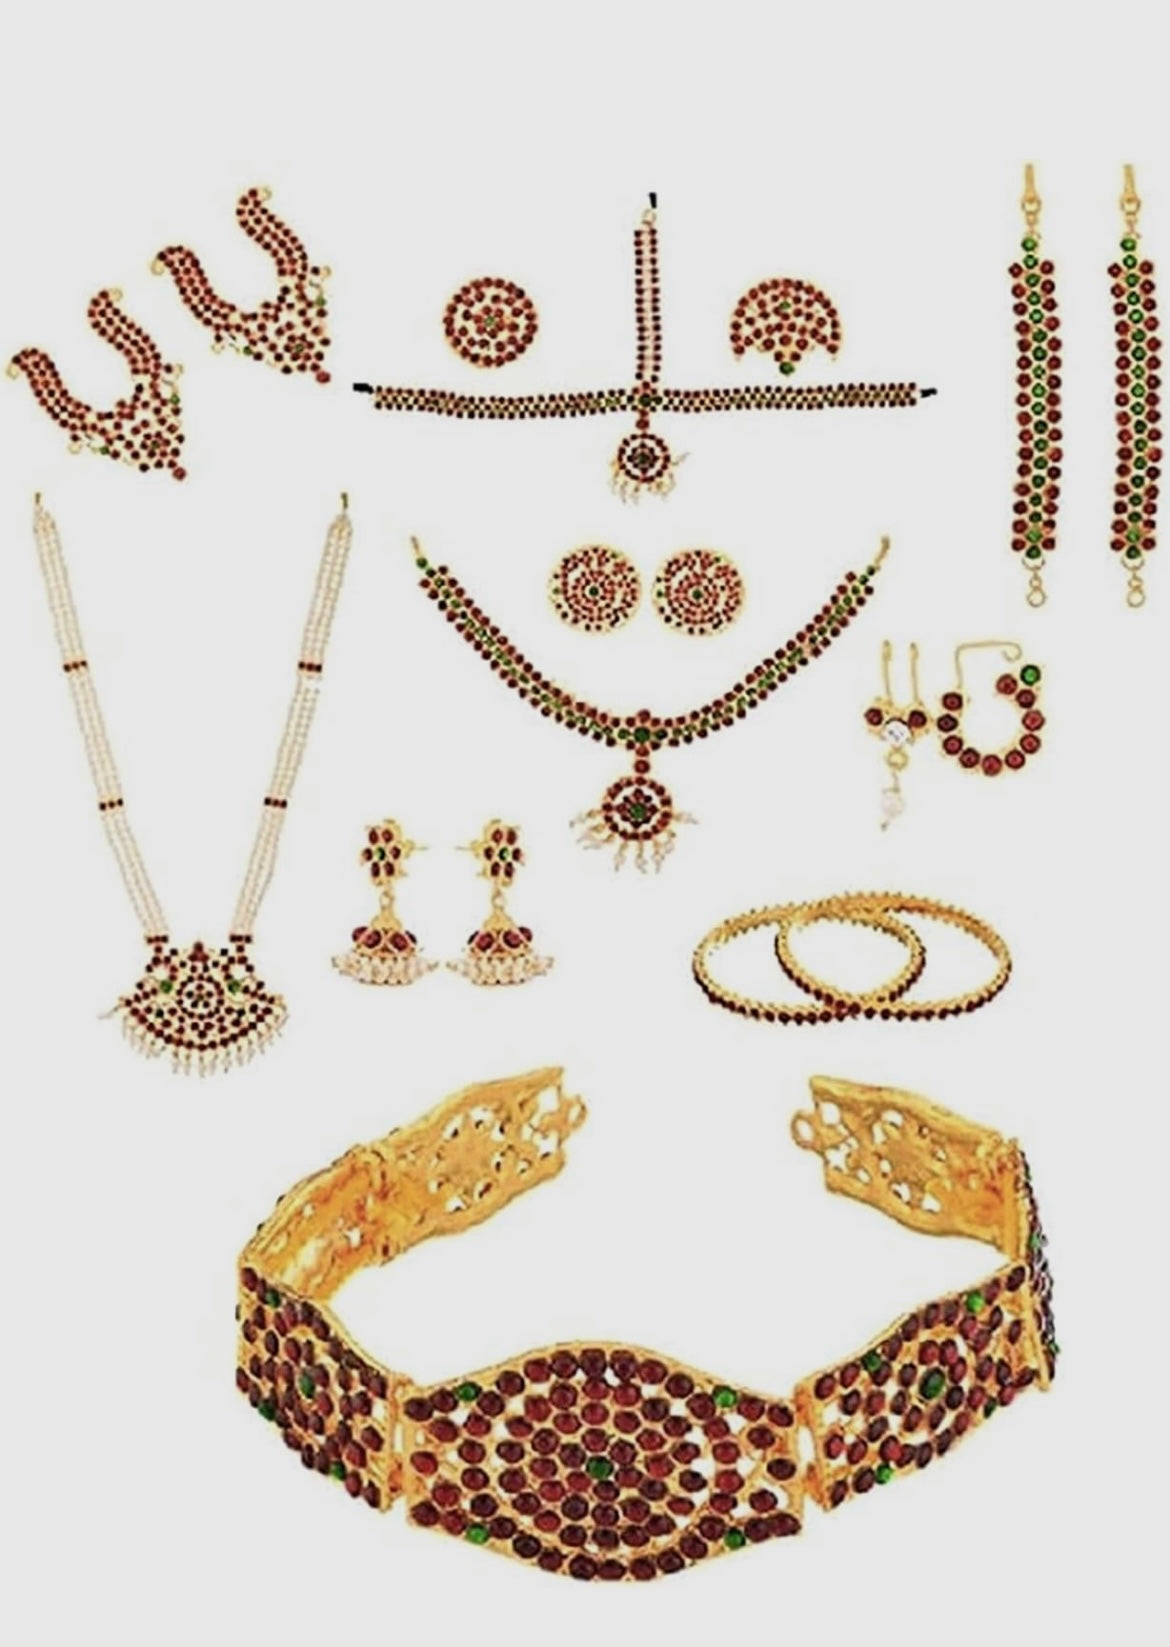 Bharathanatyam dance jewelry full set